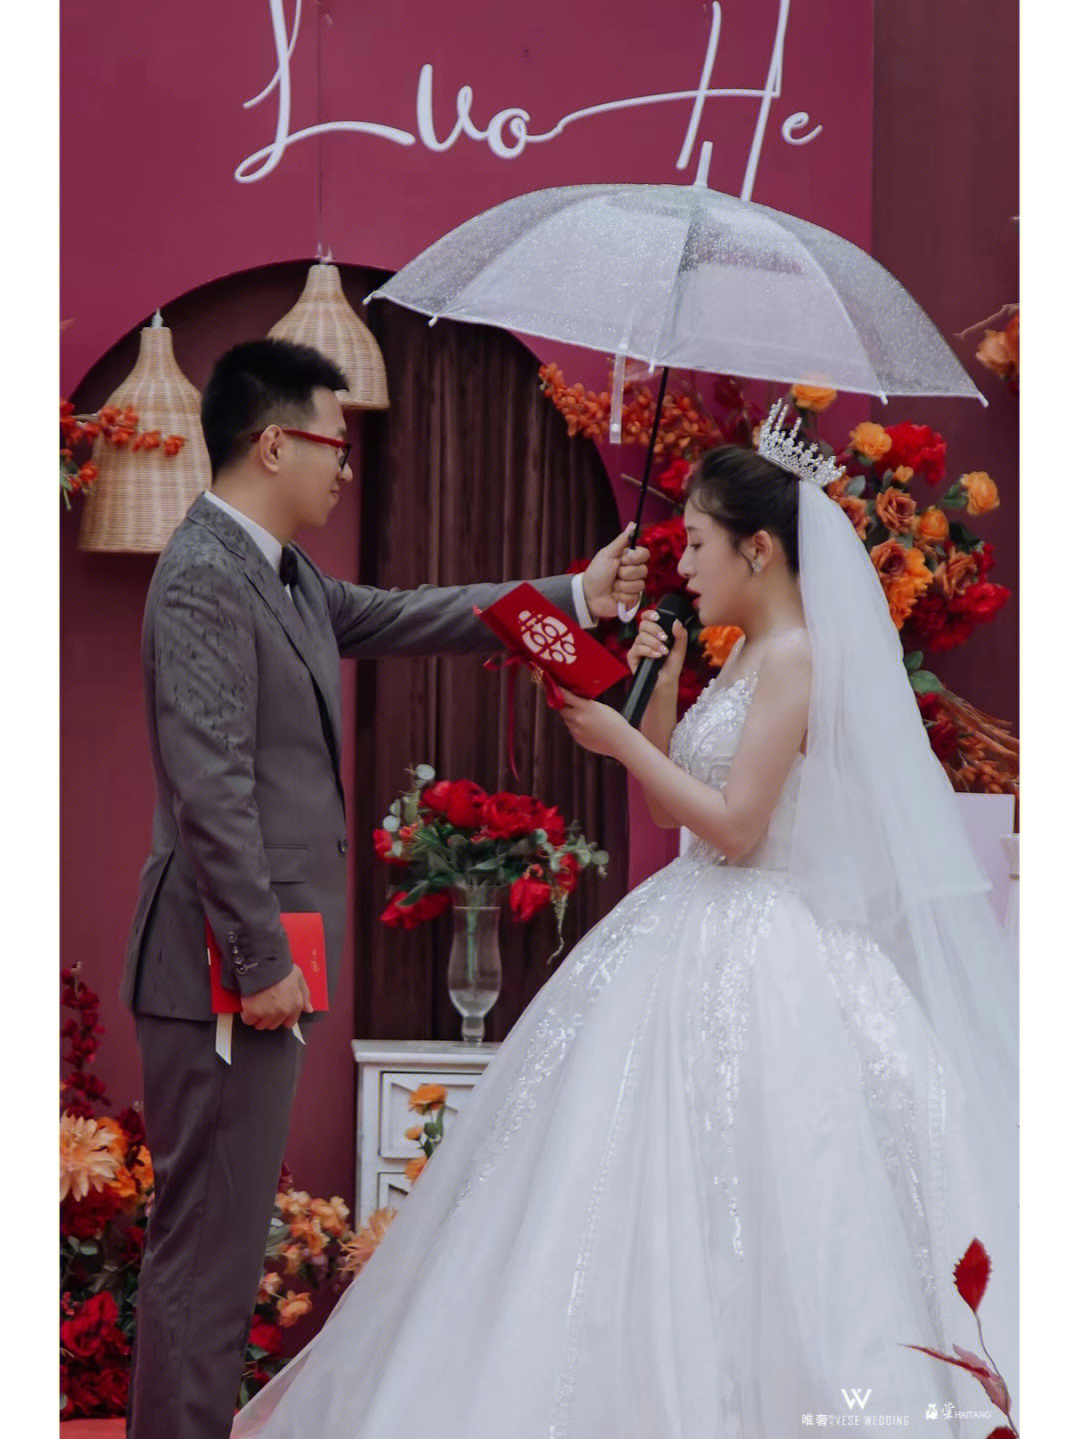 雨中的婚礼更浪漫,是天意,因为娶你这件事风雨无阻